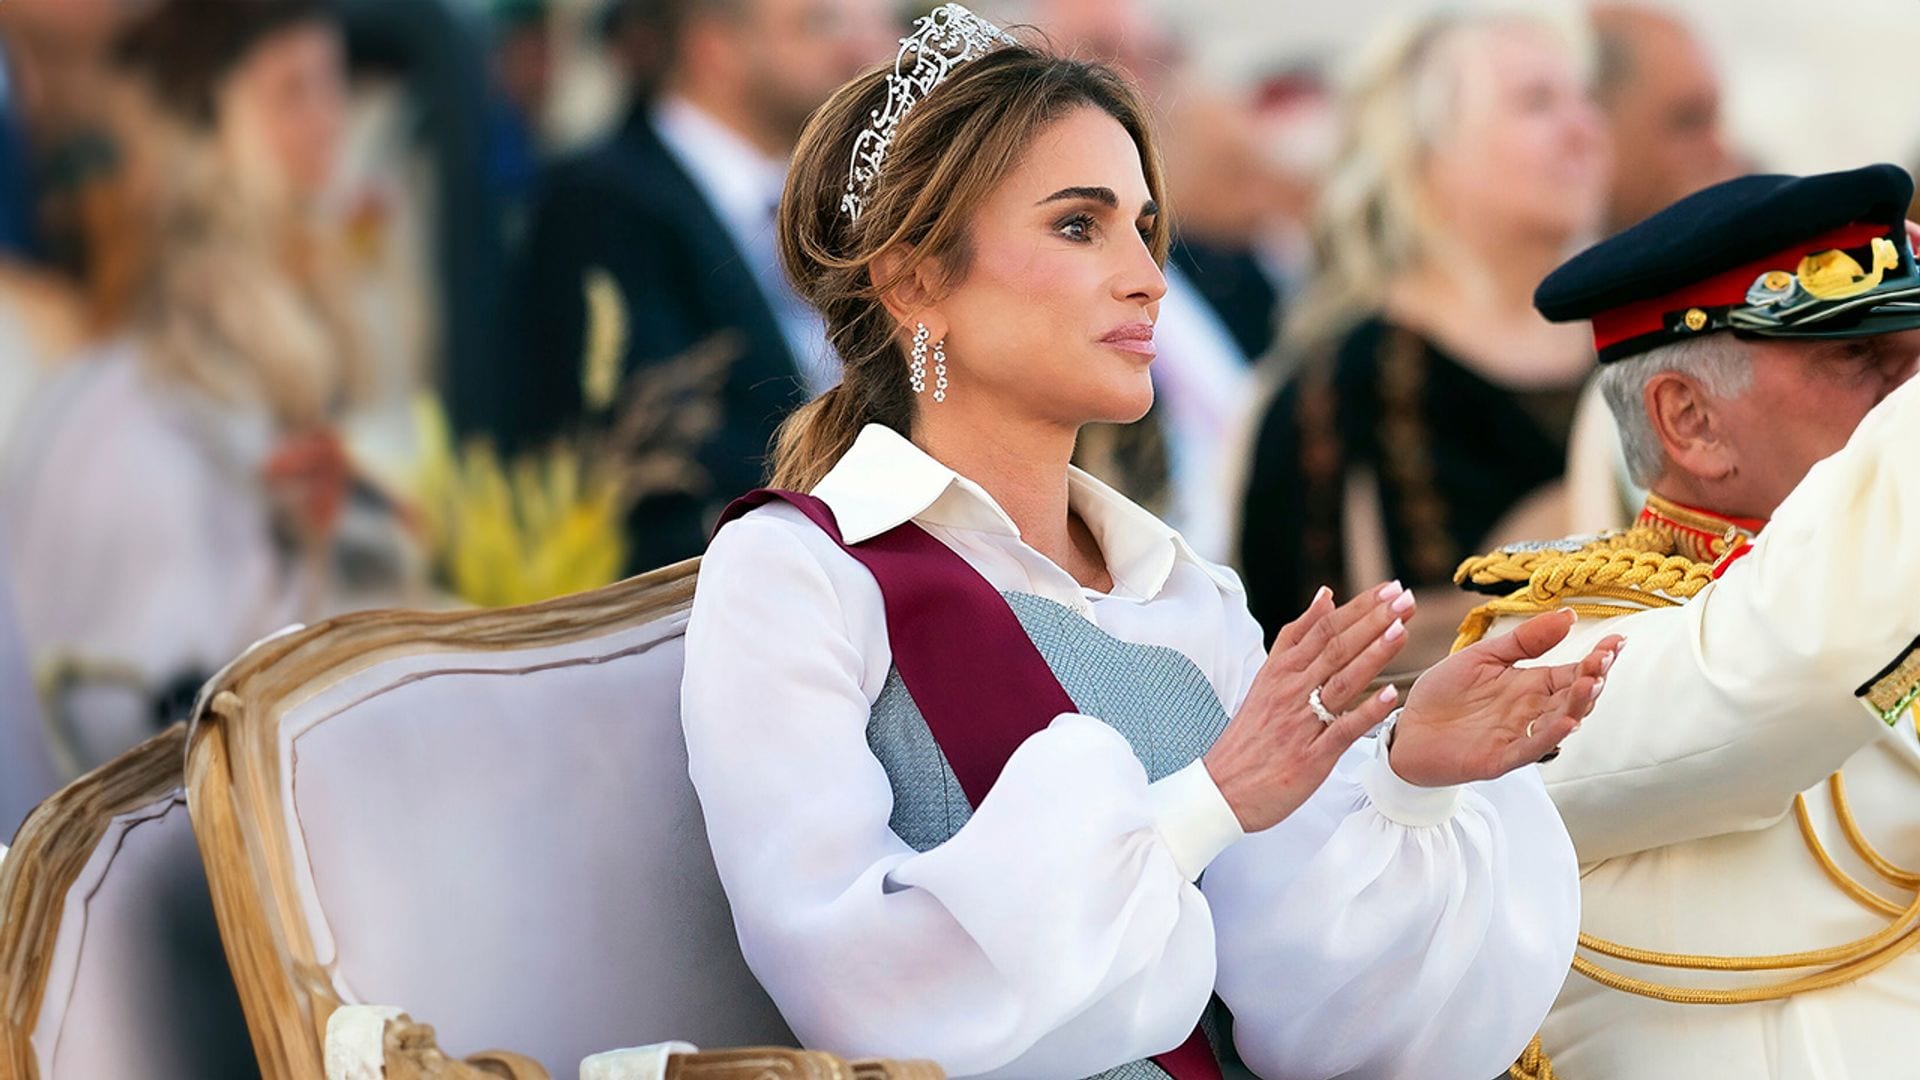 El espectacular look de Rania para celebrar sus 25 años como reina: tiara y un vestido camisero con corsé